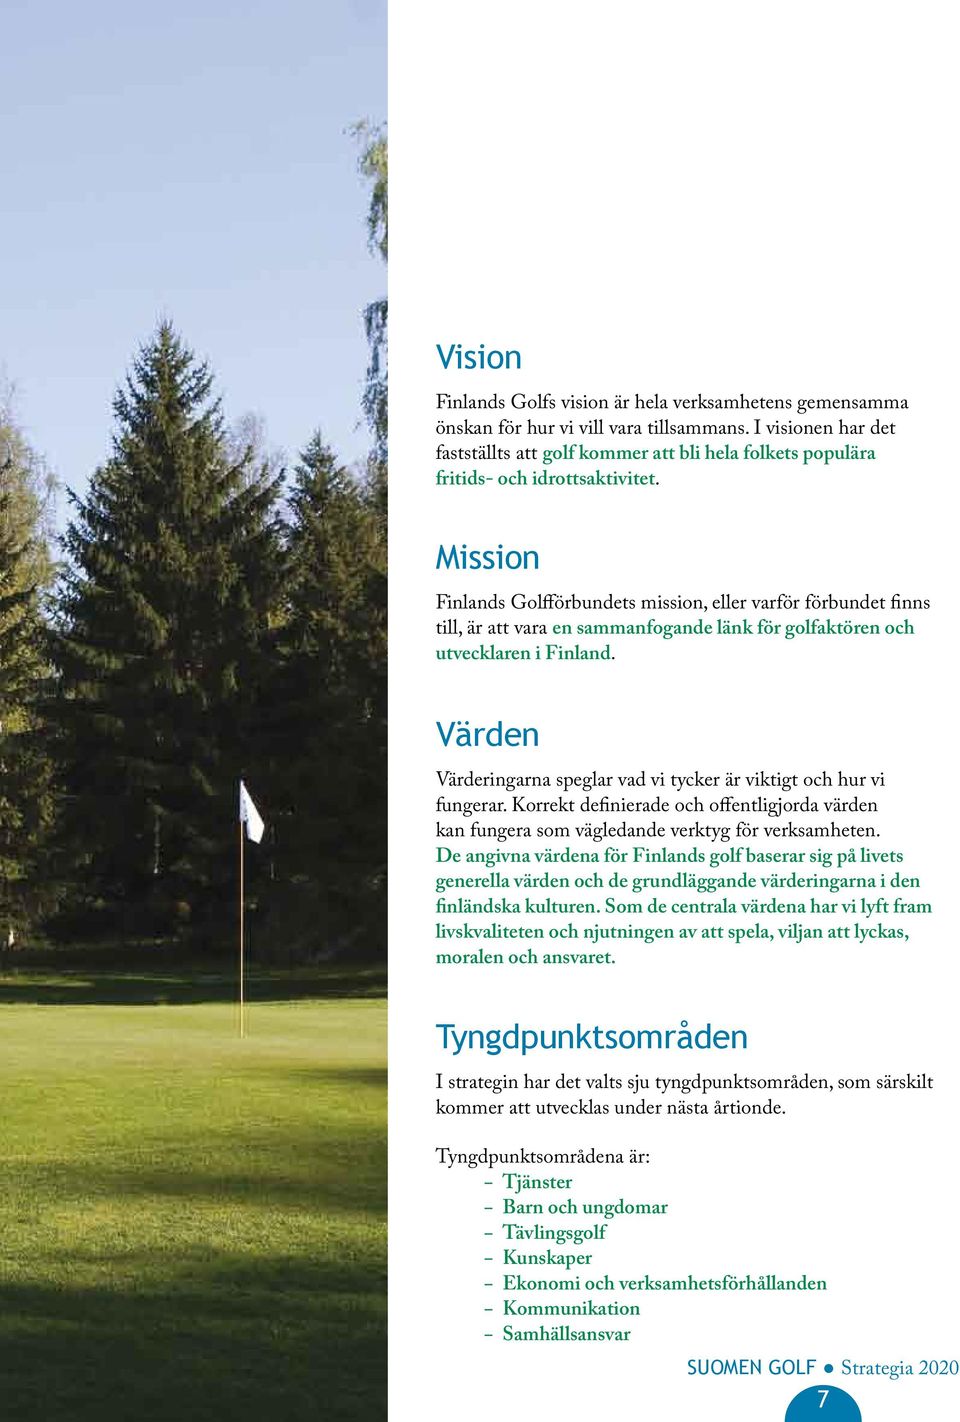 Mission Finlands Golfförbundets mission, eller varför förbundet finns till, är att vara en sammanfogande länk för golfaktören och utvecklaren i Finland.